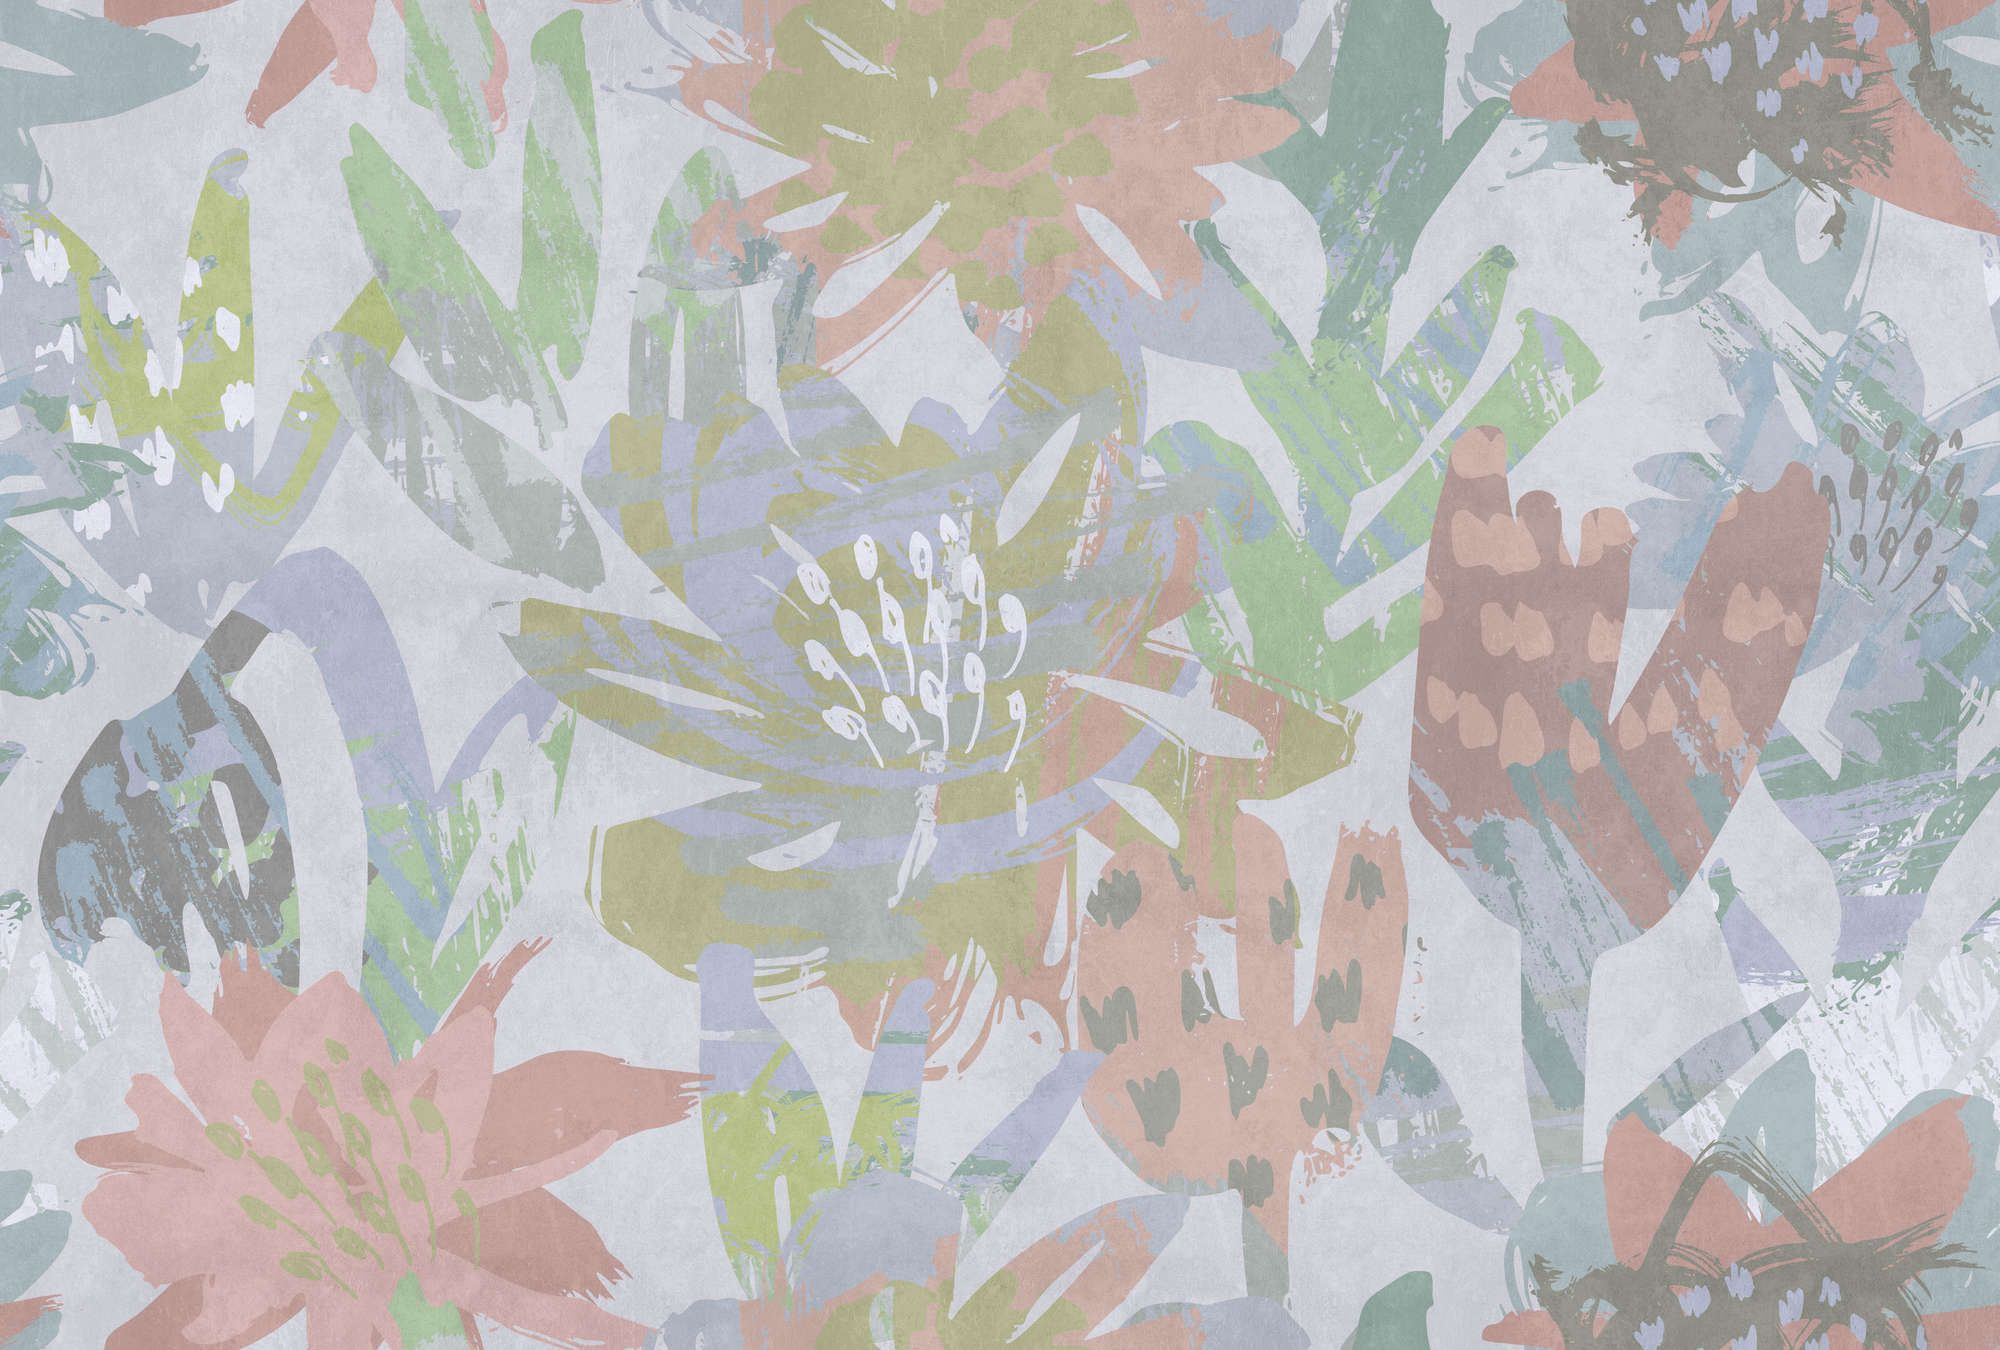             Fotomural »sophia« - Motivo floral colorido sobre textura de yeso de hormigón - Material no tejido de textura ligera
        